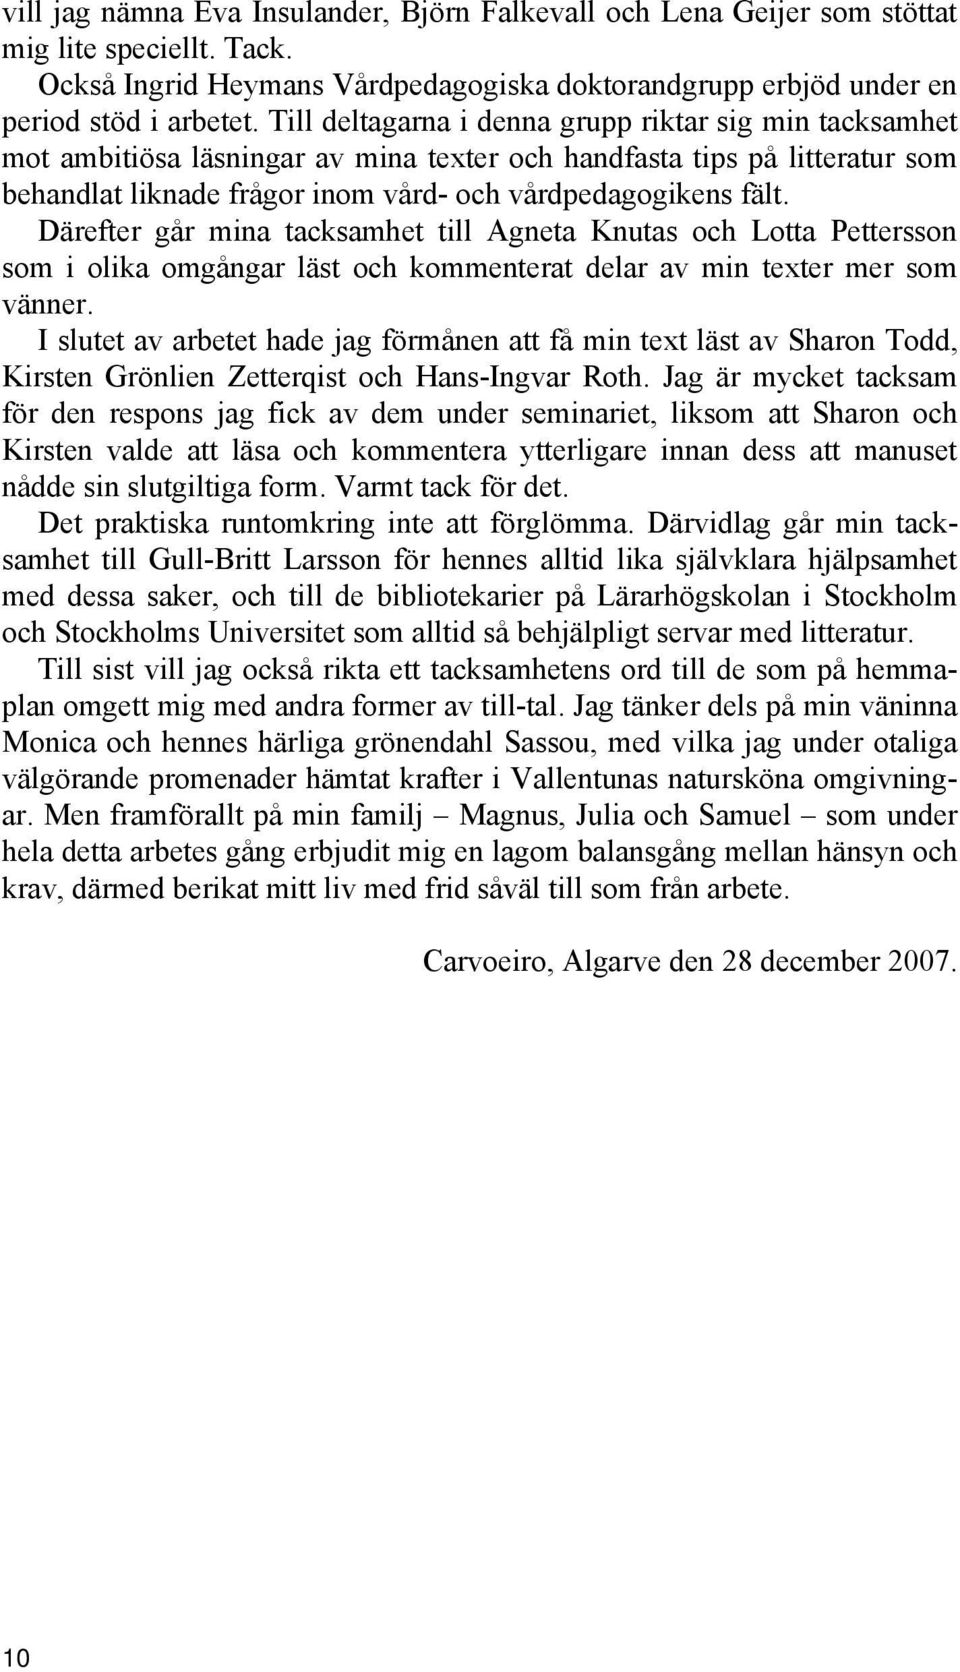 Därefter går mina tacksamhet till Agneta Knutas och Lotta Pettersson som i olika omgångar läst och kommenterat delar av min texter mer som vänner.